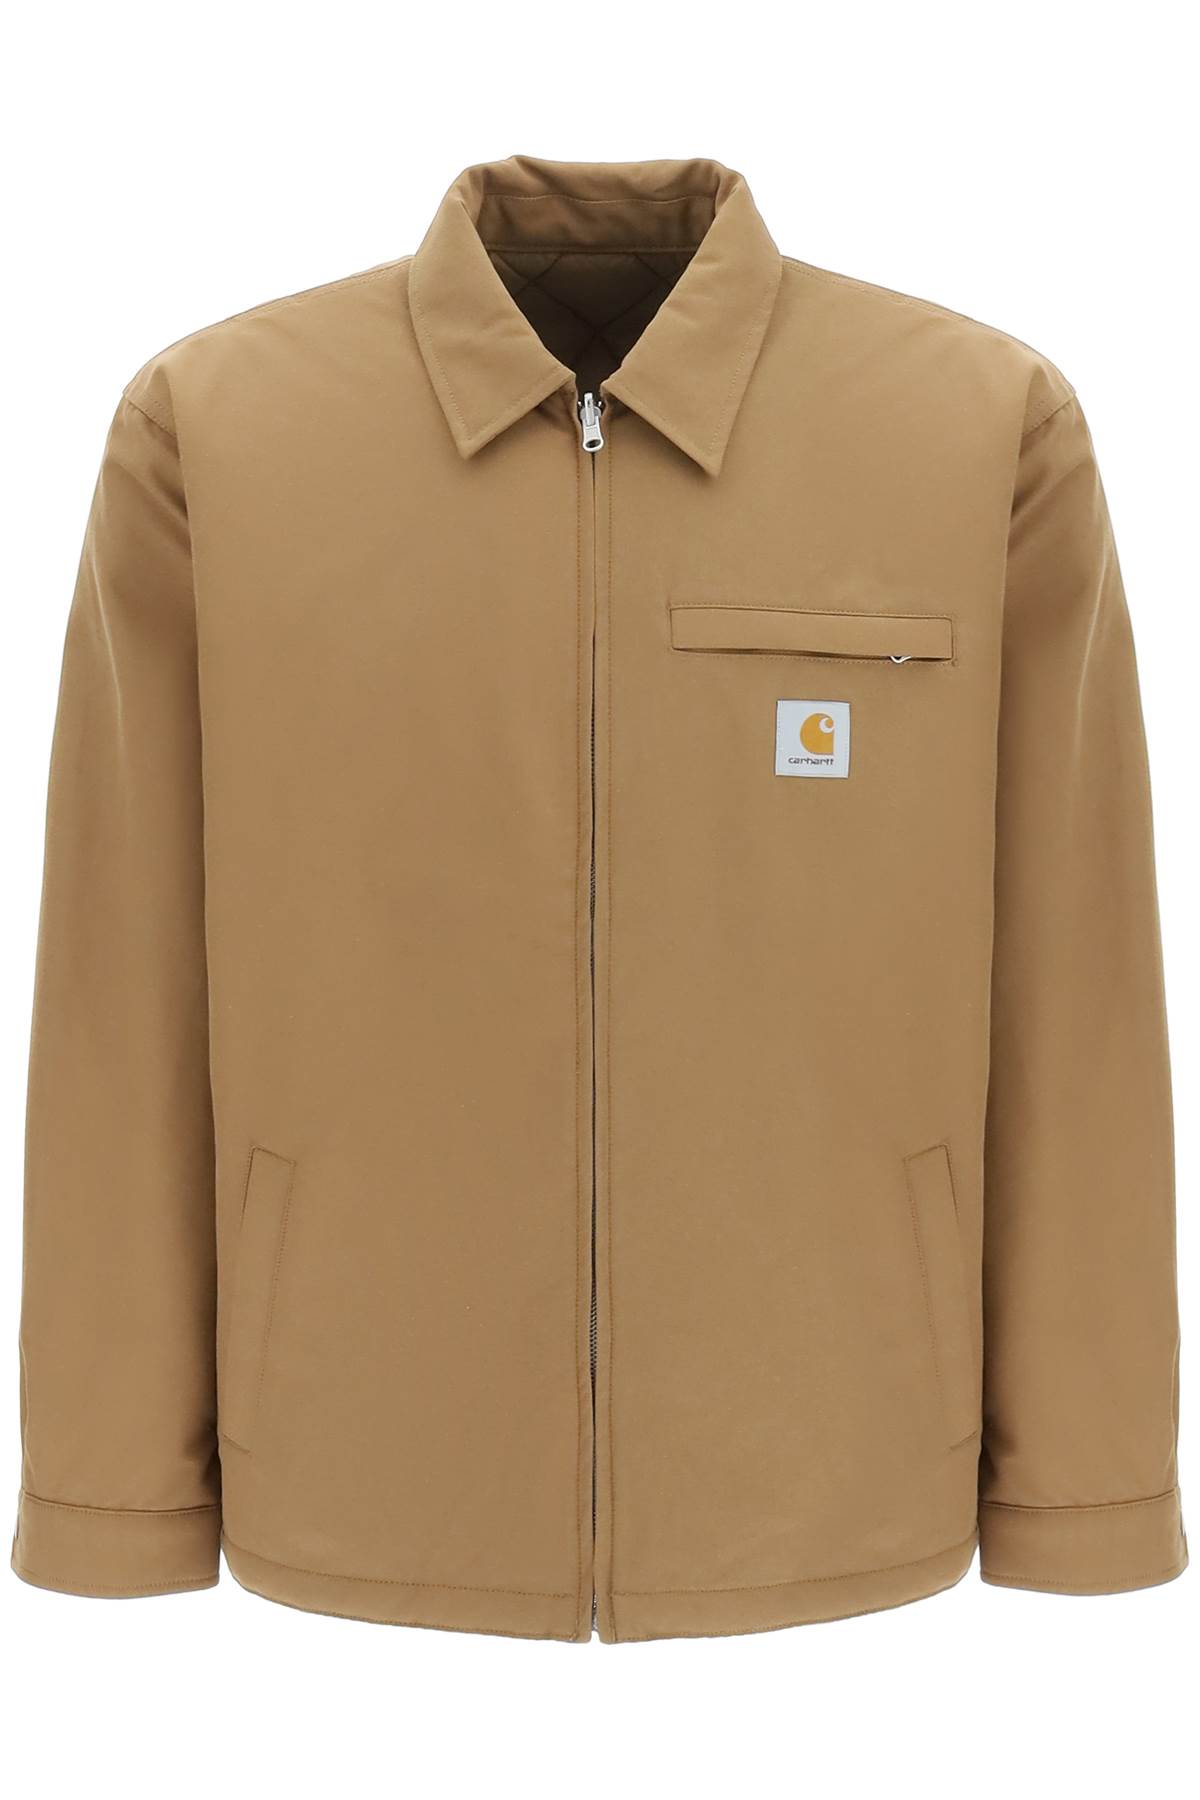 Carhartt madera Reversible Jacket